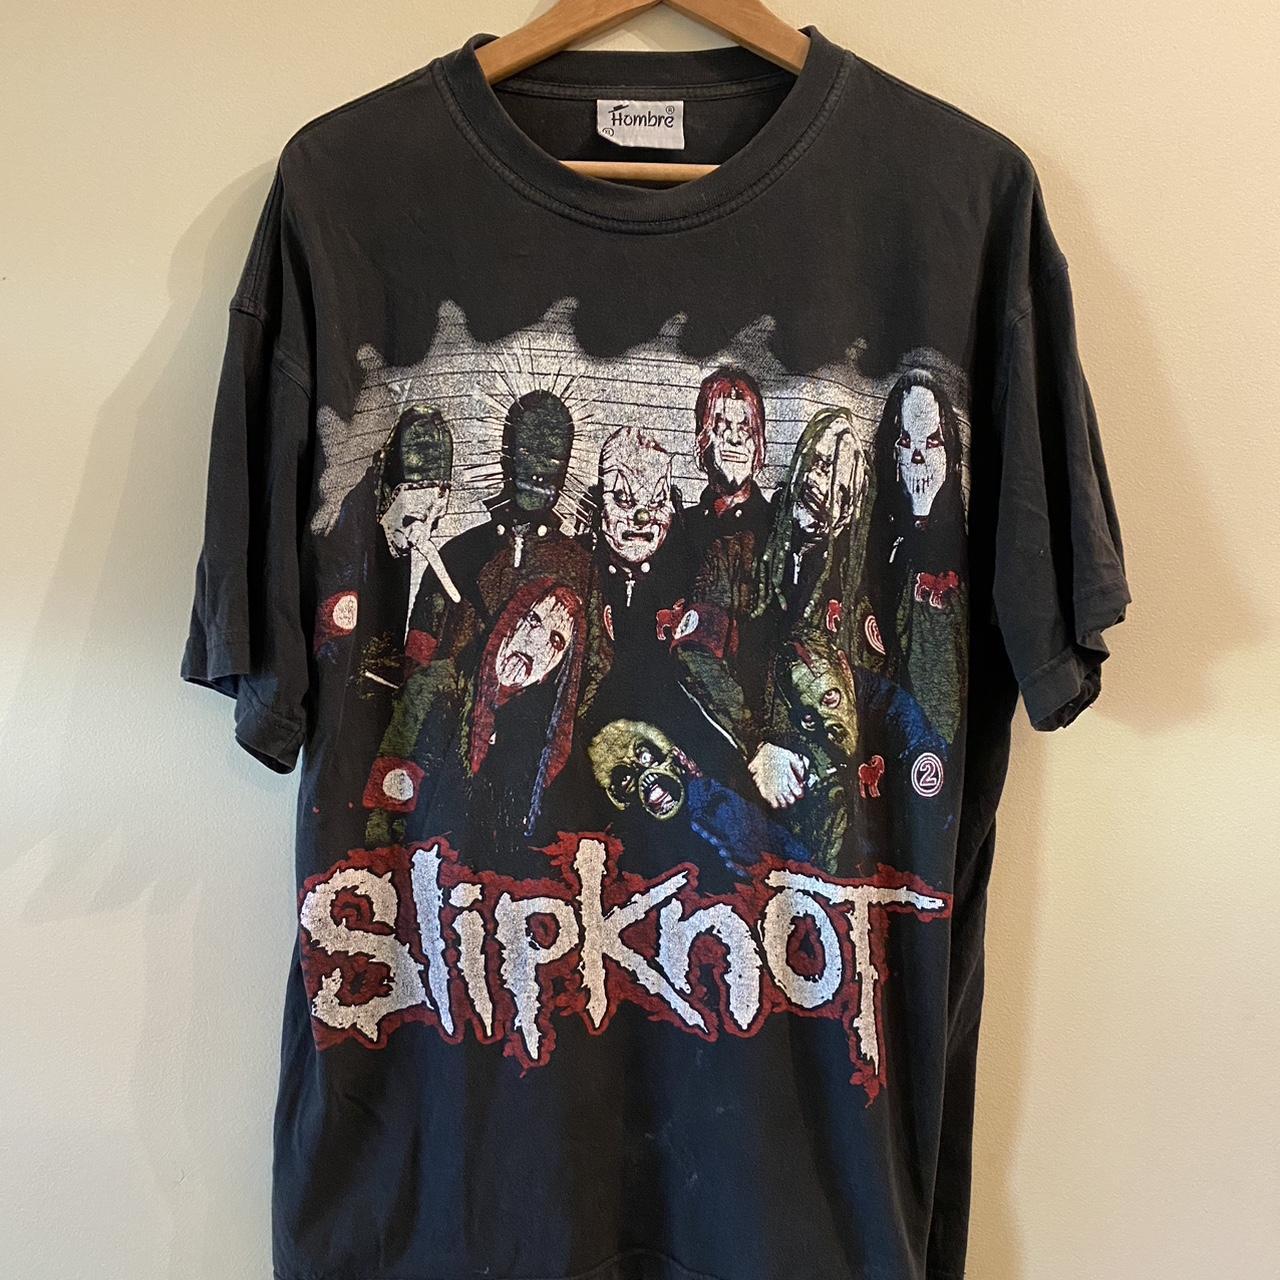 Vintage 90s Slipknot Bootleg T-shirt Size XL;... - Depop